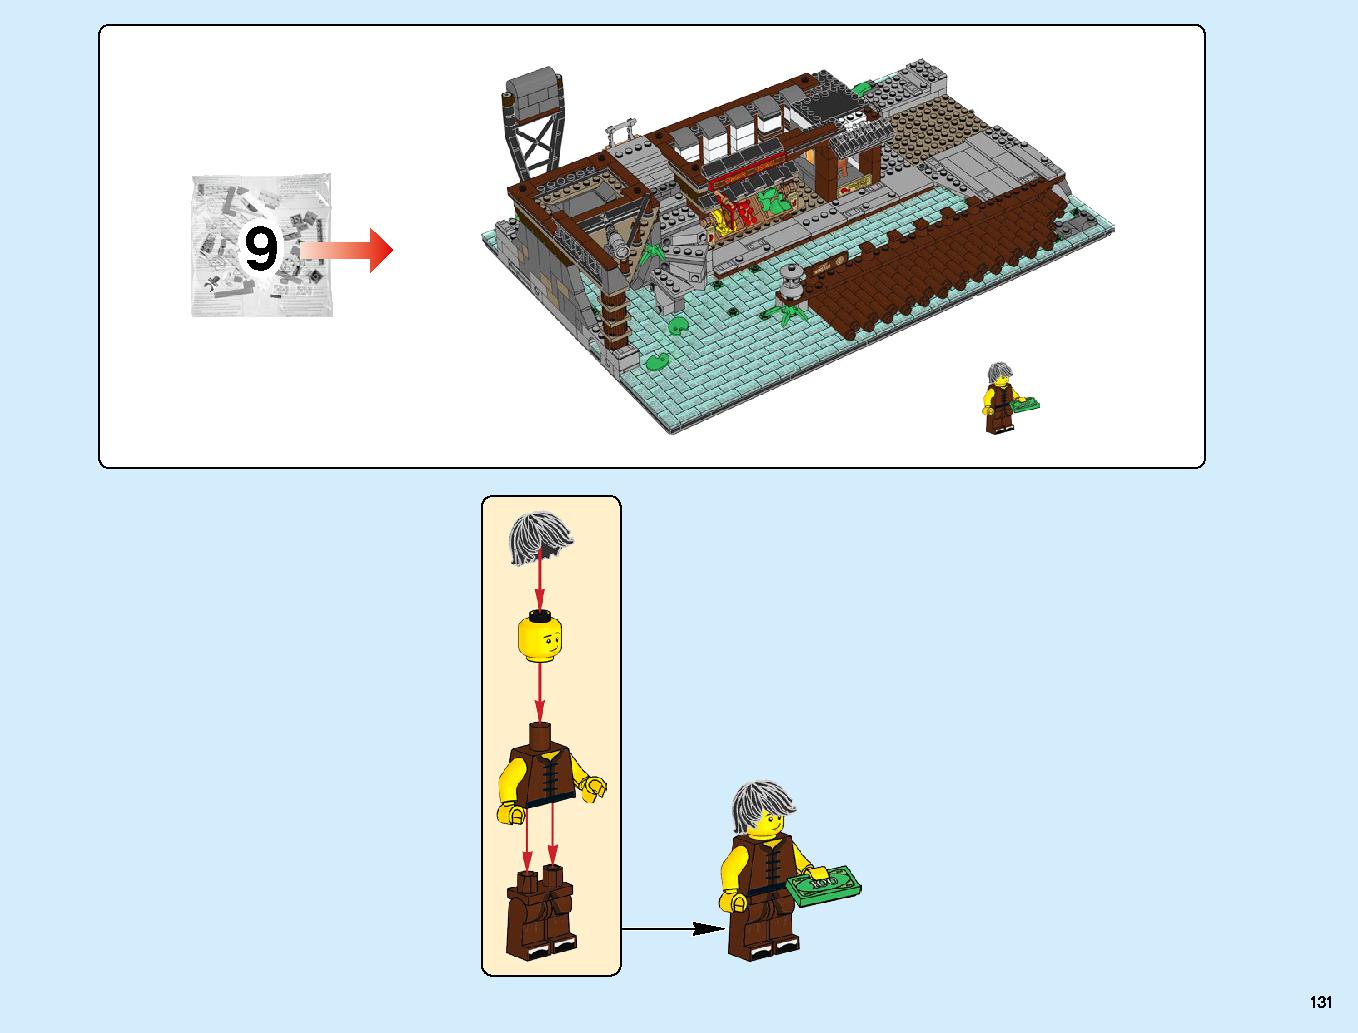 ニンジャゴーシティ・ポートパーク 70657 レゴの商品情報 レゴの説明書・組立方法 131 page